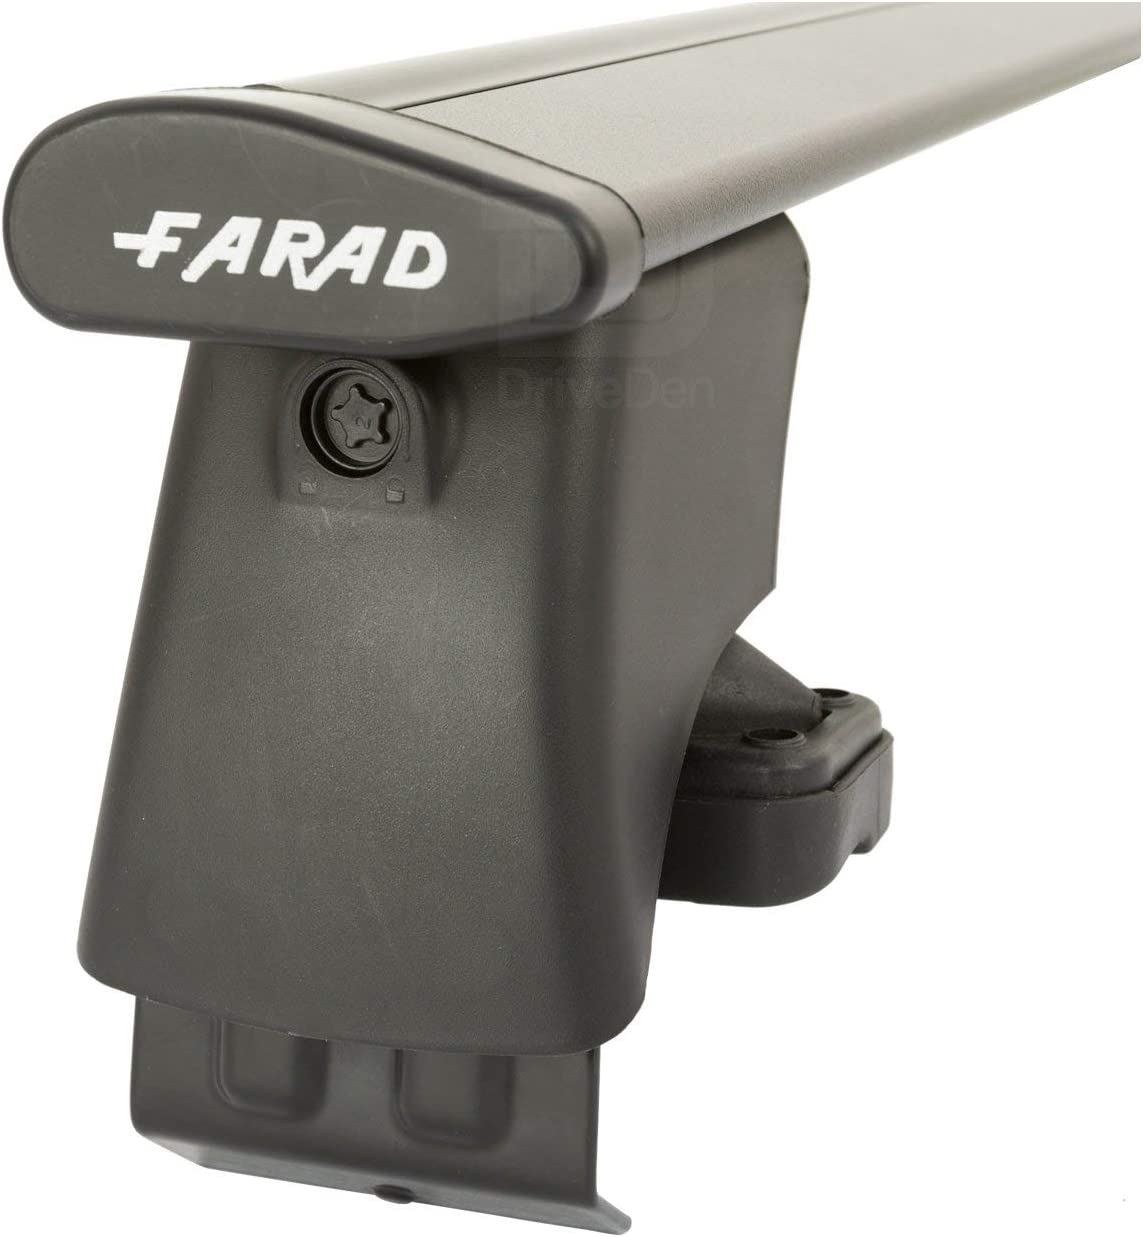 FARAD-Kit H2 per barre portatutto - Peugeot 308 2014-2021 (senza corrimano)